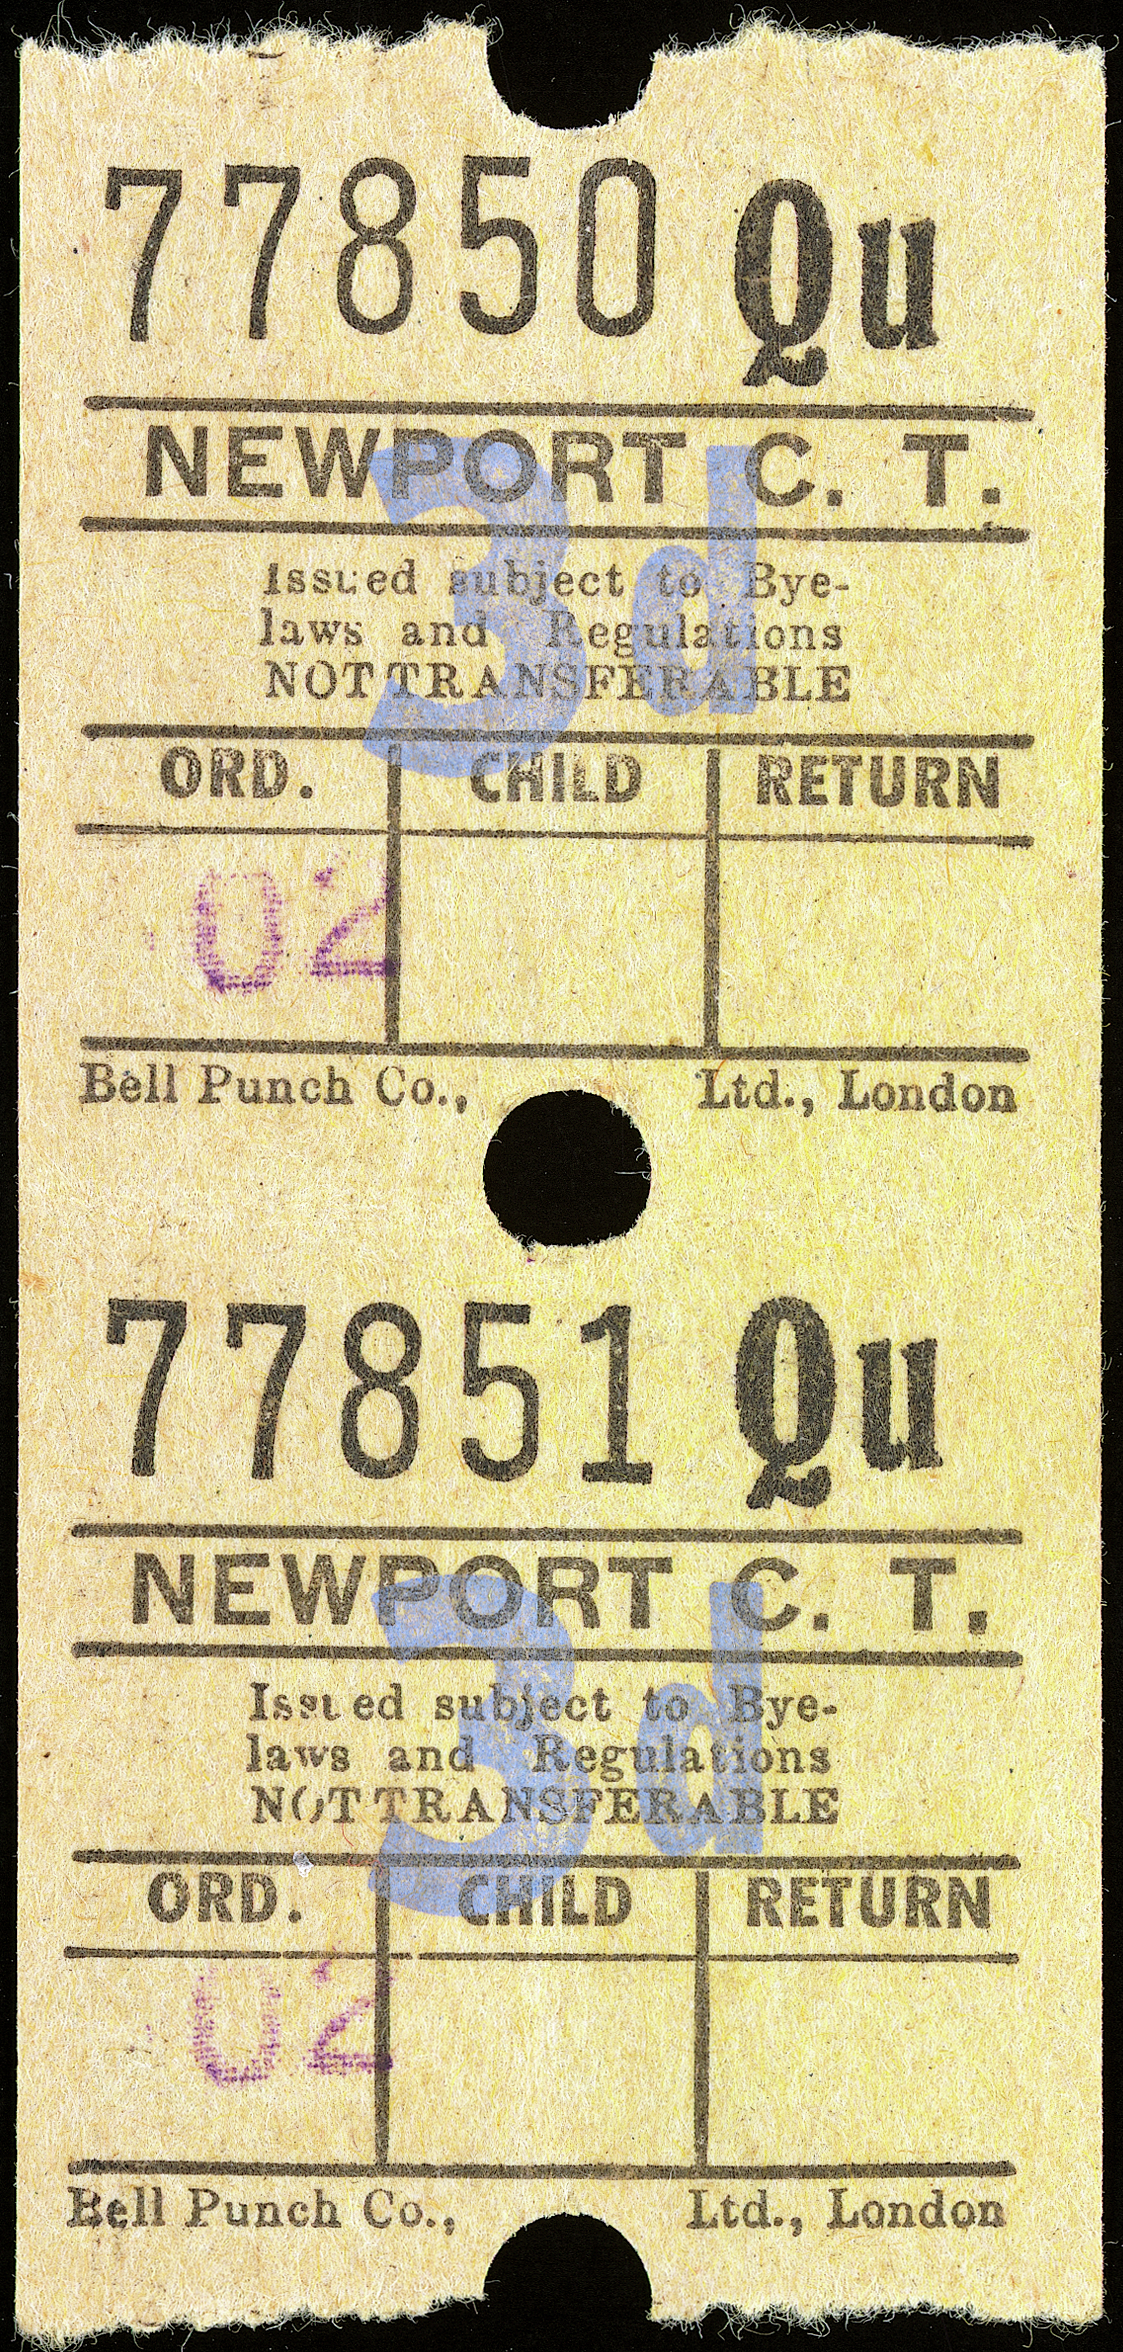 Newport C.T. bus ticket